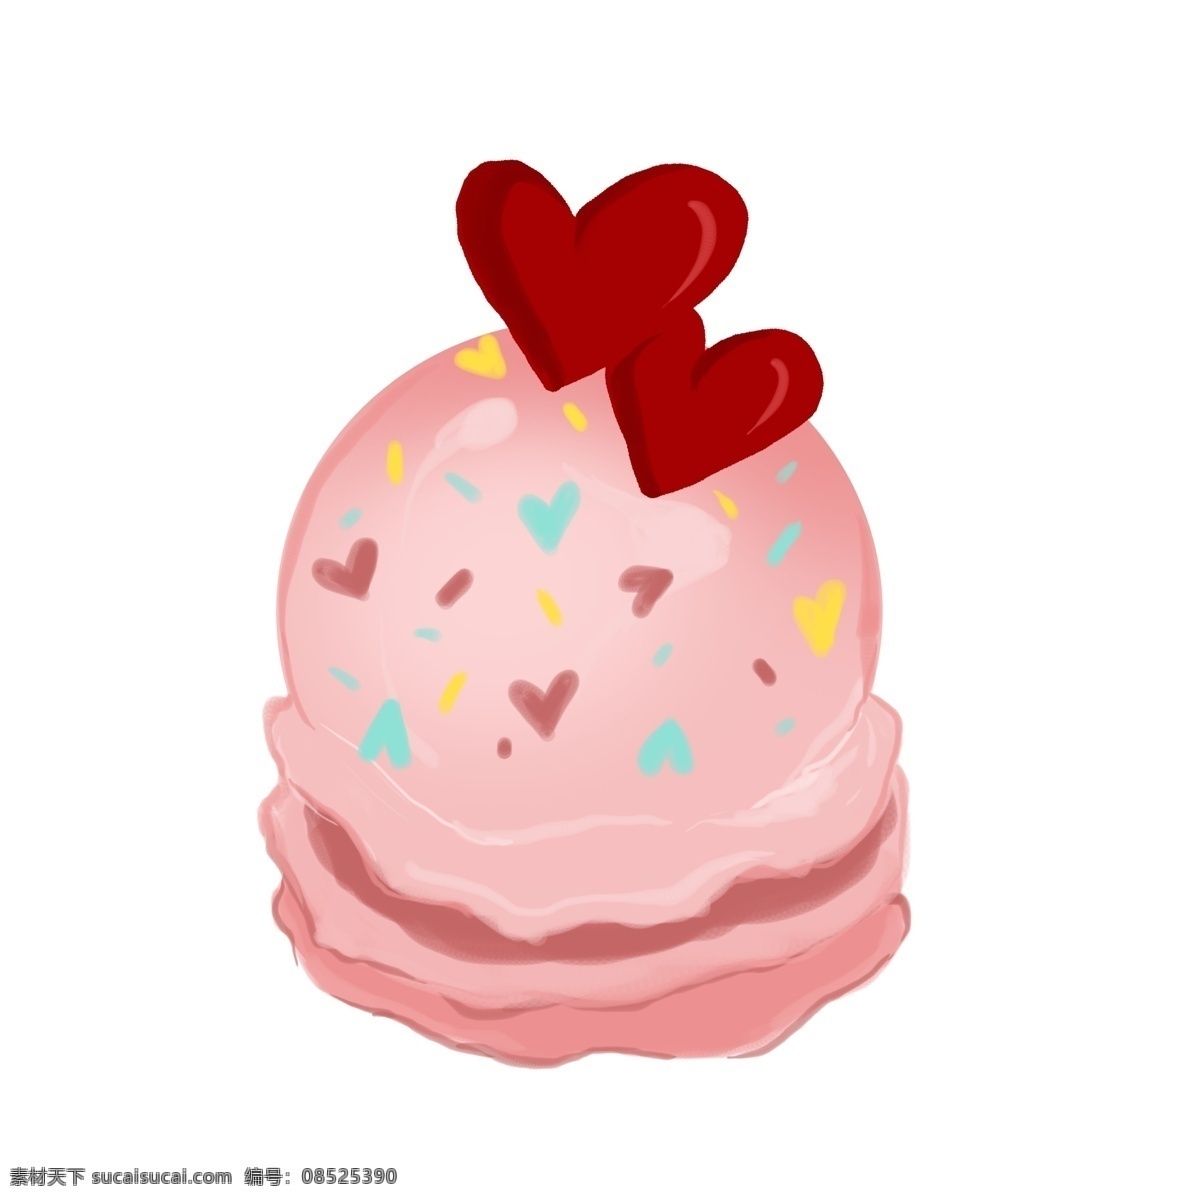 粉色 爱情 蛋糕 插画 漂亮 手绘爱情蛋糕 卡通爱情蛋糕 烘焙爱情蛋糕 可爱